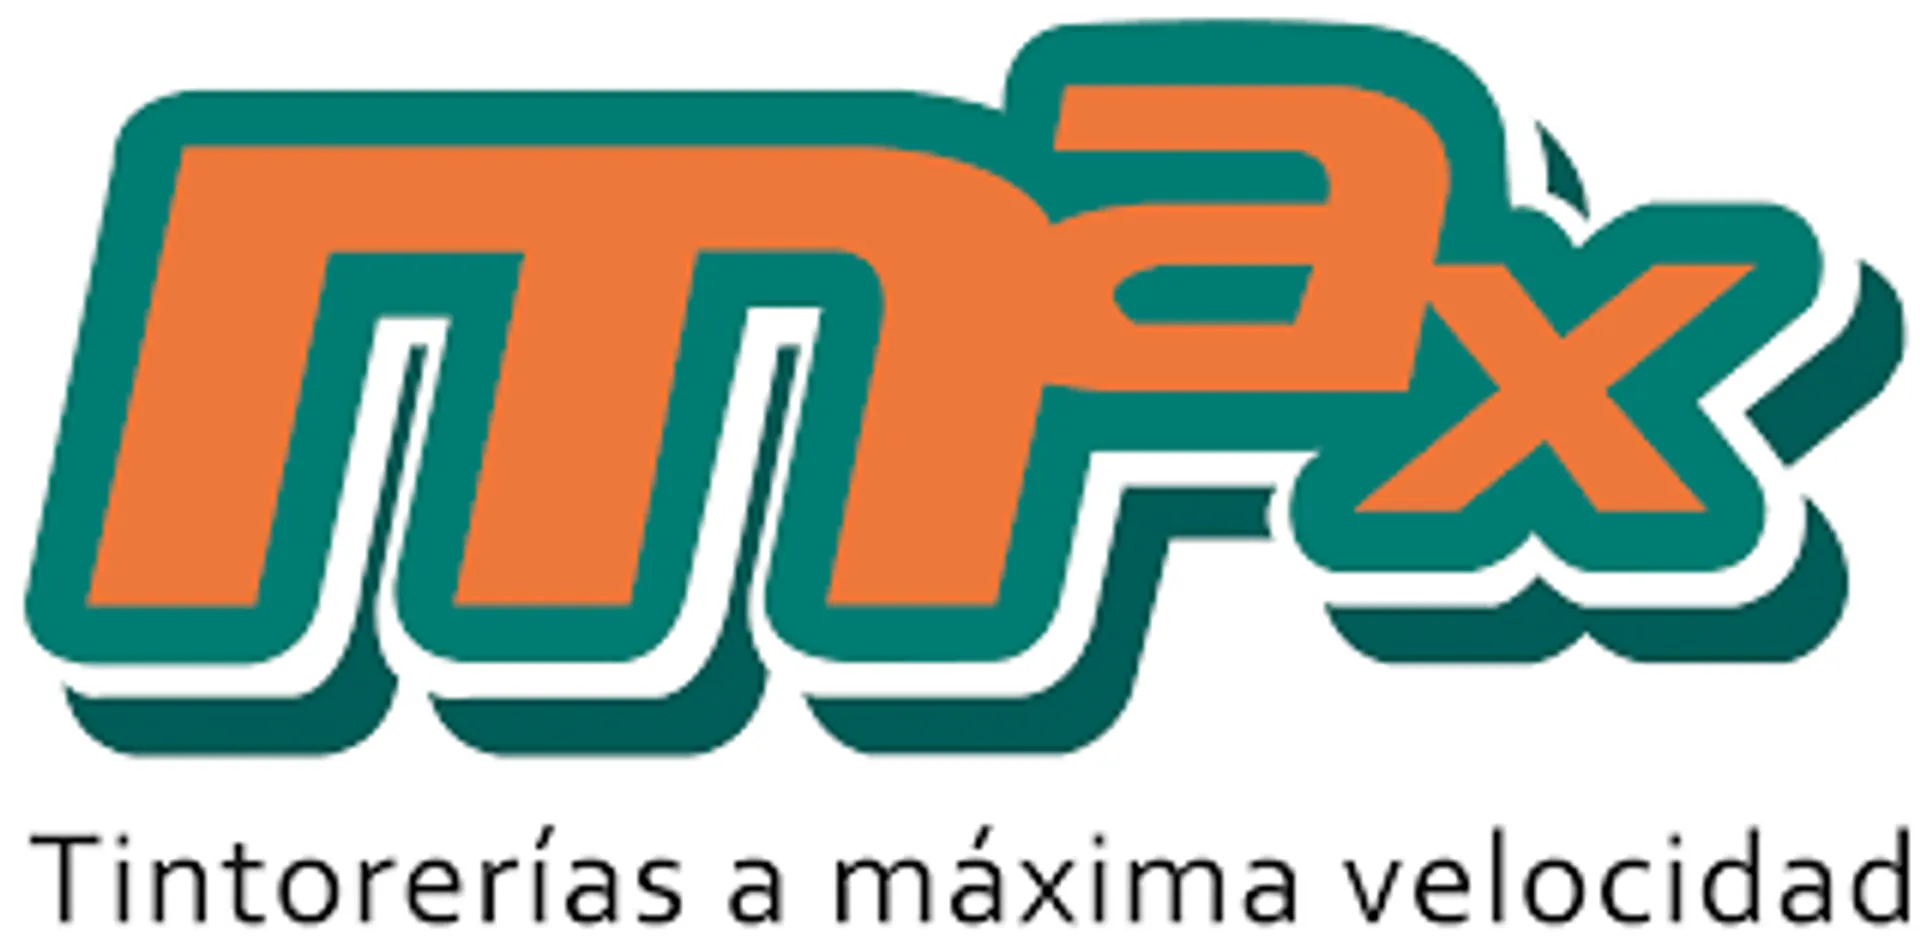 TINTORERÍAS MAX logo